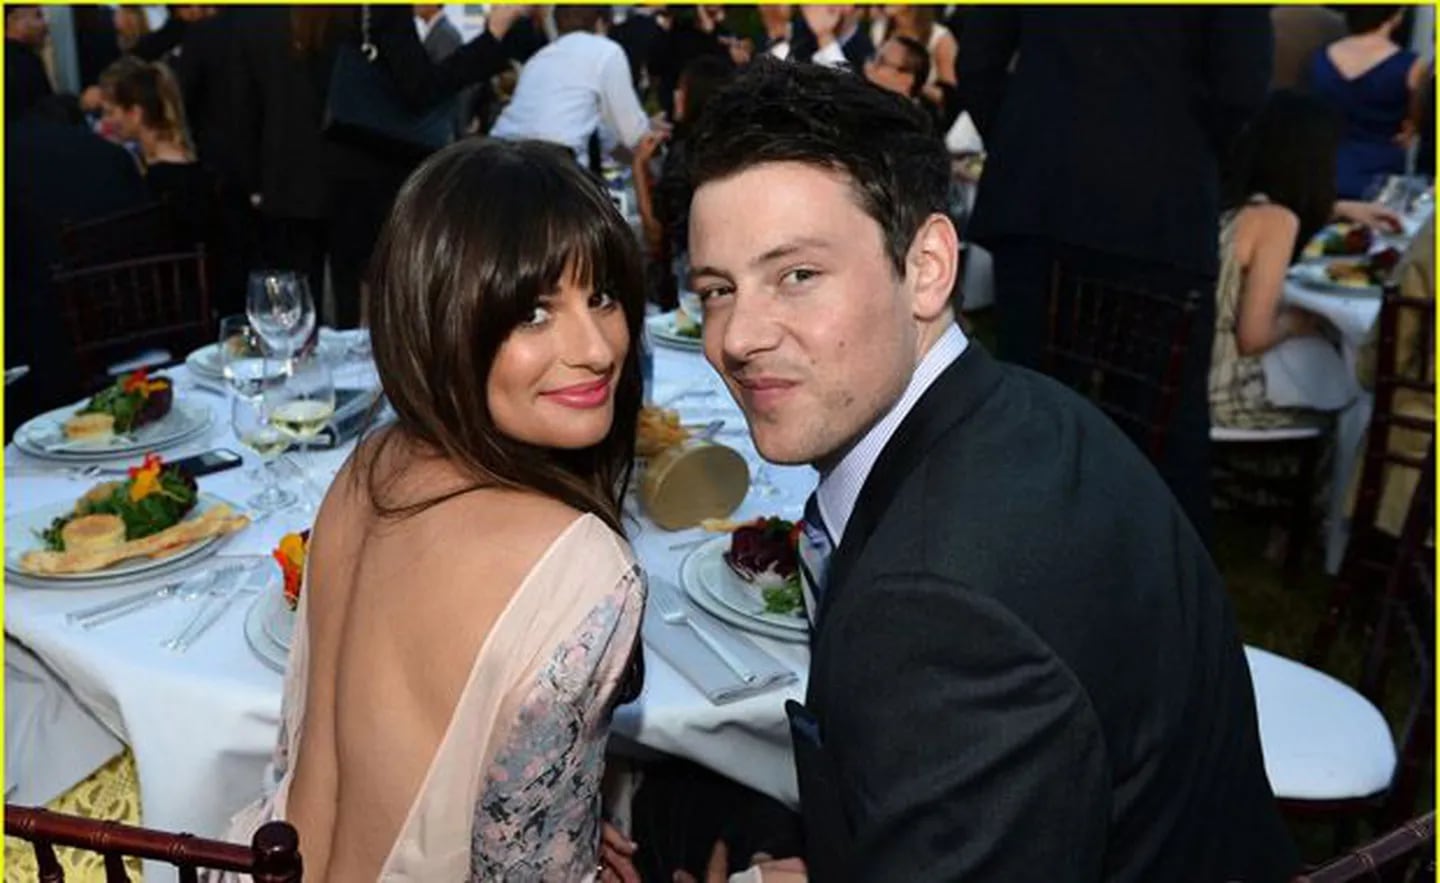 El actor junto a su novia Lea Michele. (Foto: Just Jared)